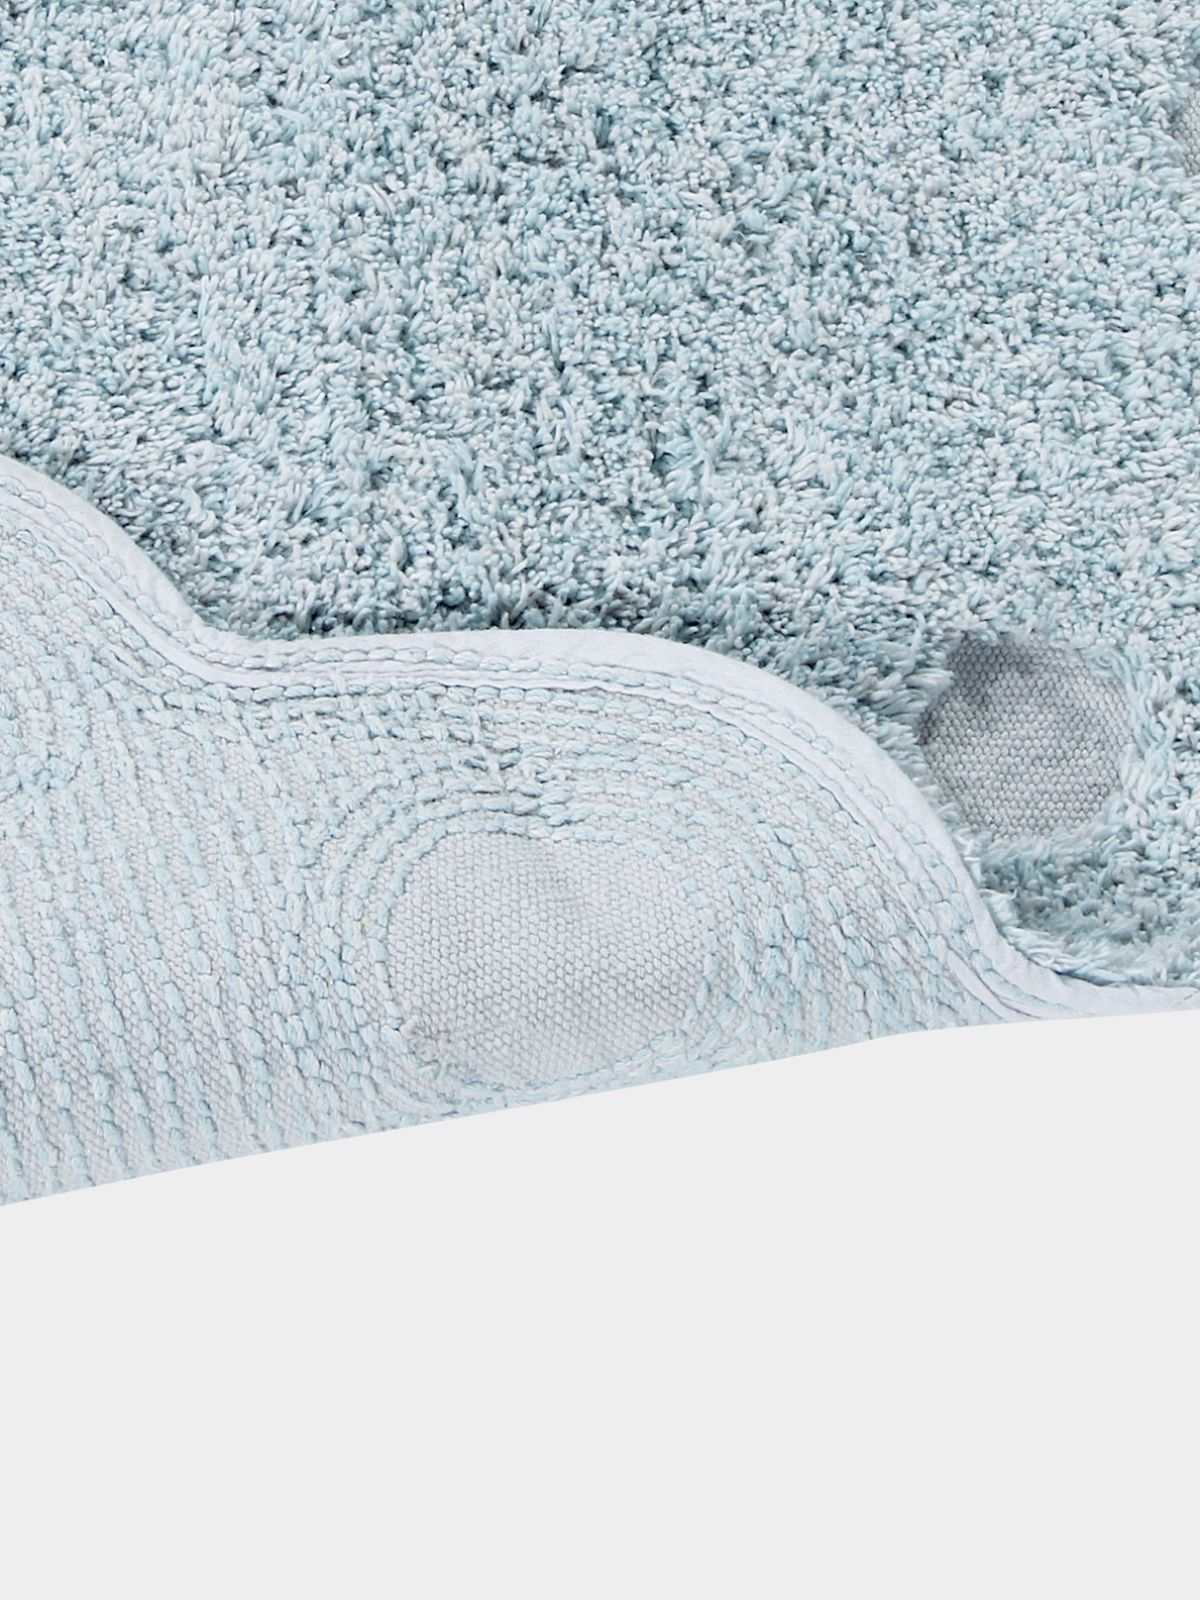 Tappeto in cotone lavabile Picone, in colore Blu Perla-4